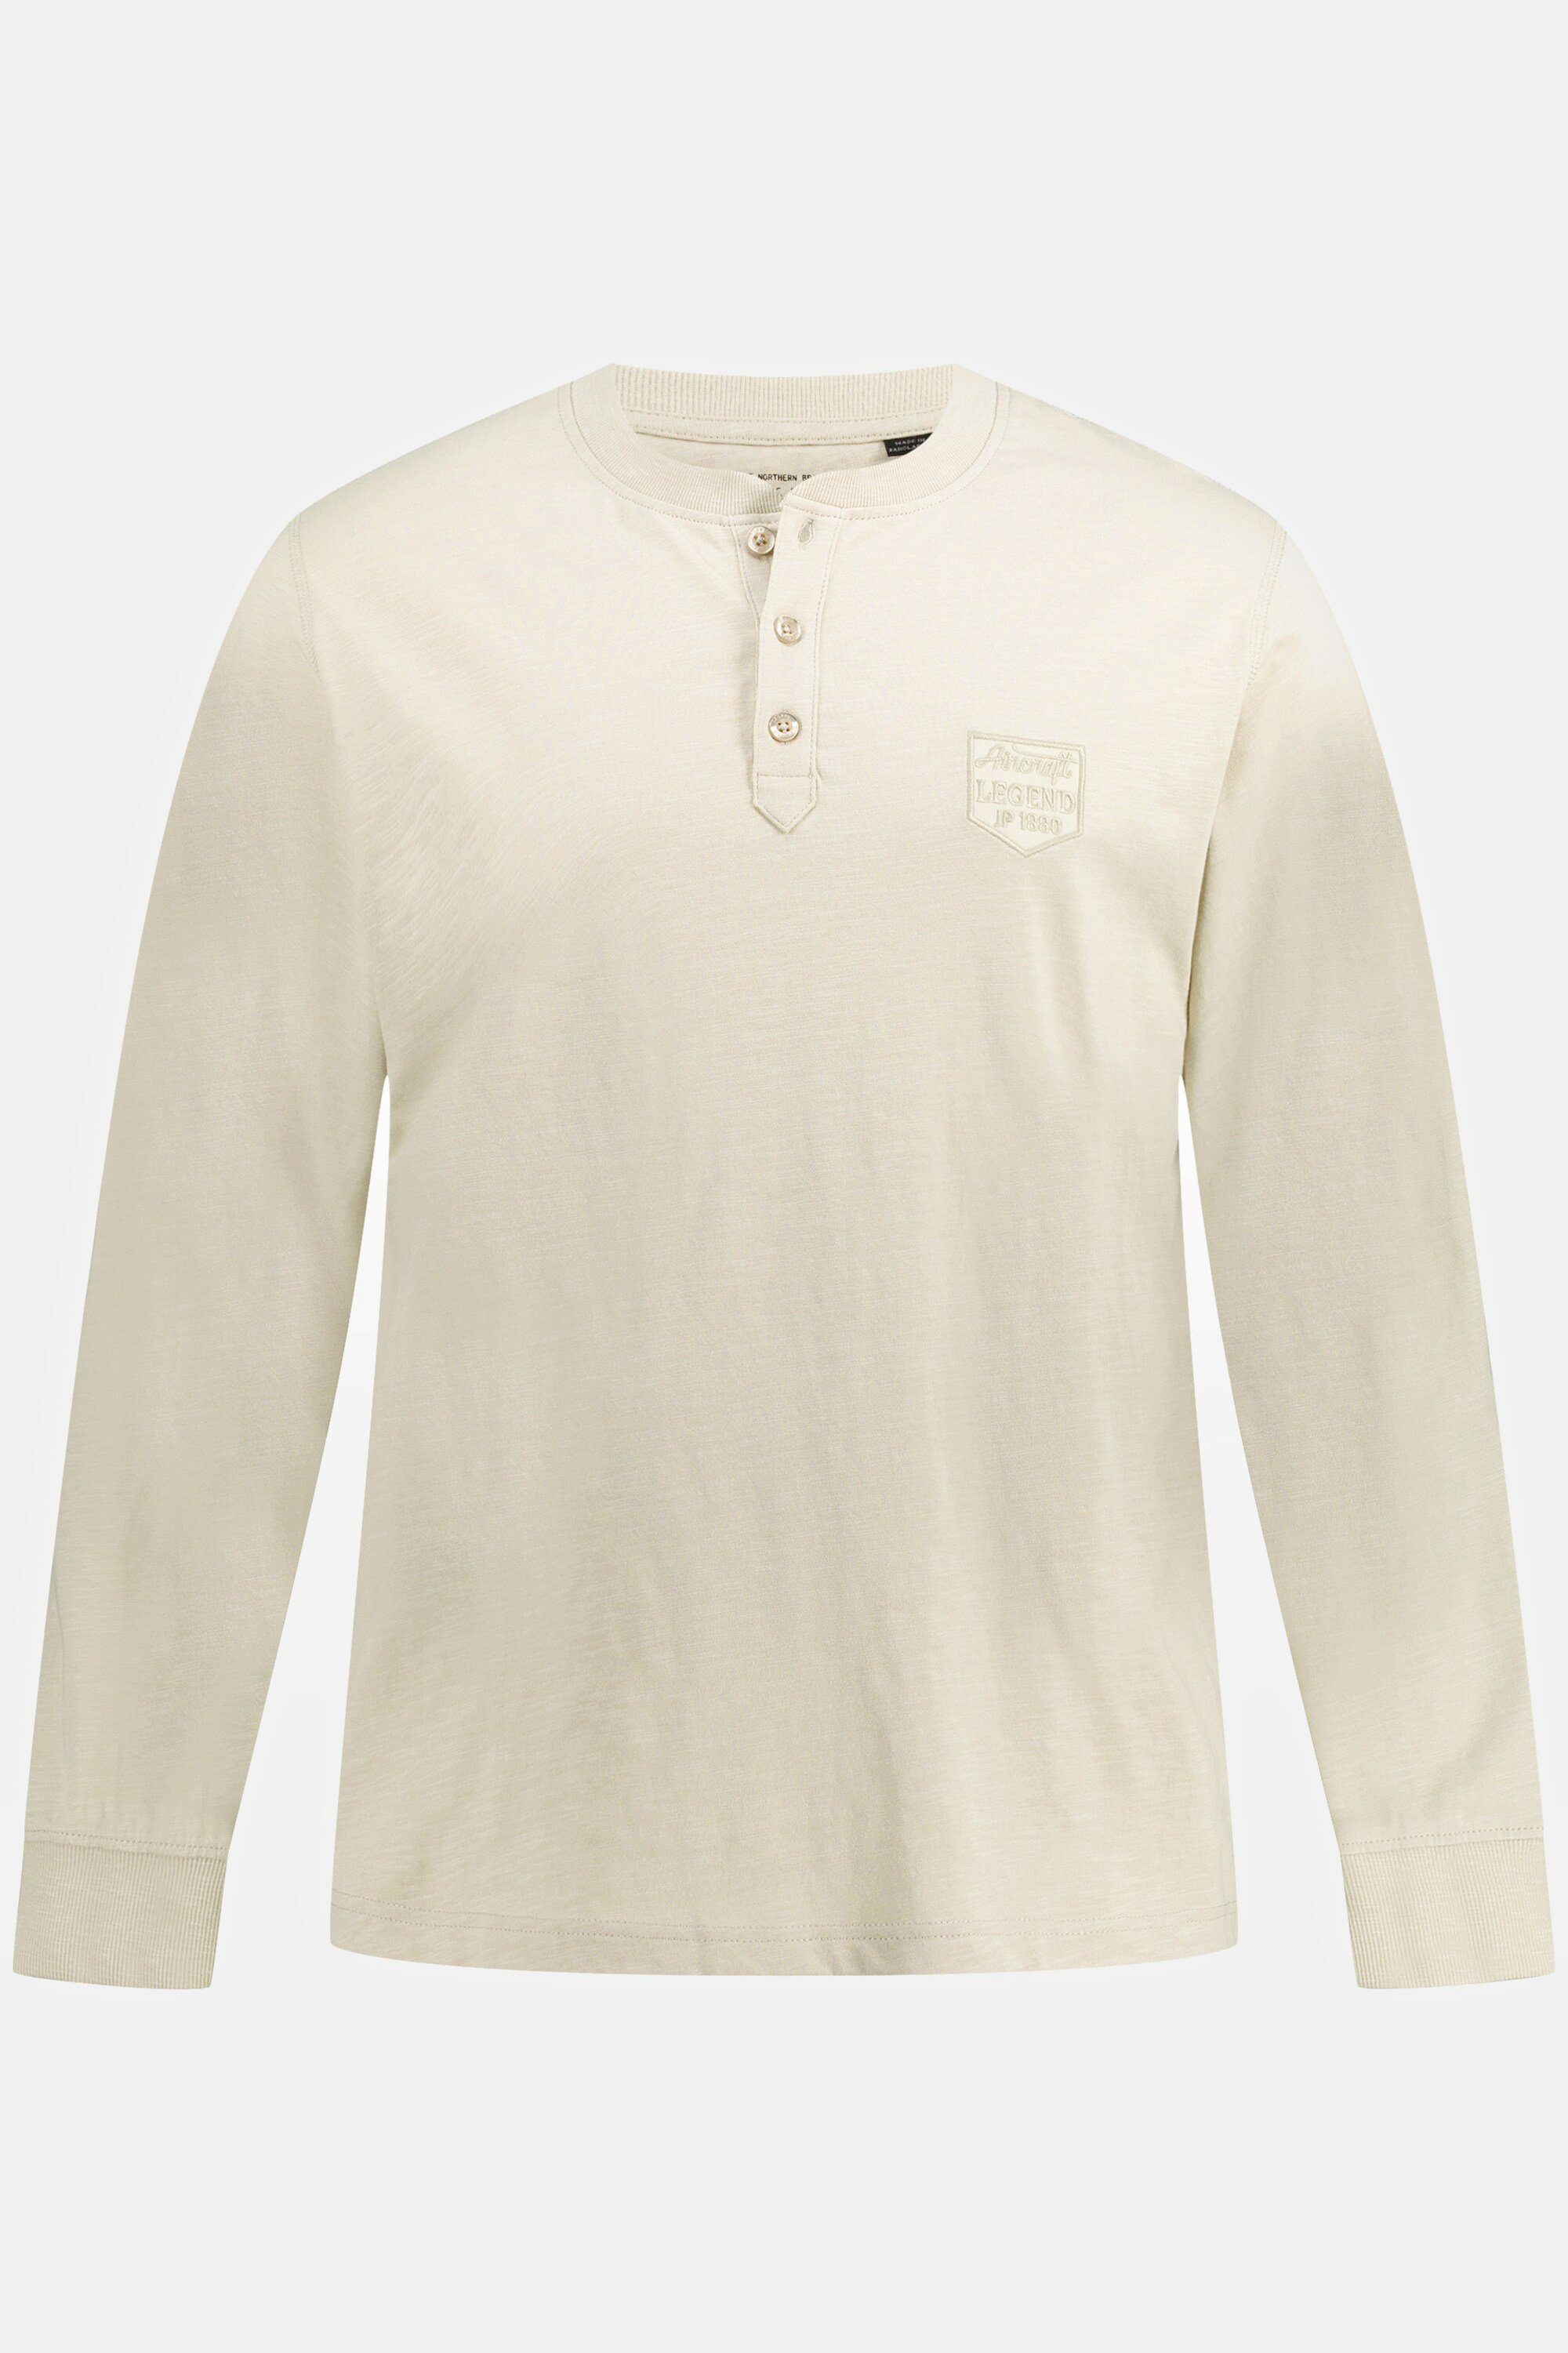 sand-beige Langarm Rundhals Flammjersey JP1880 Knopfleiste Henley T-Shirt